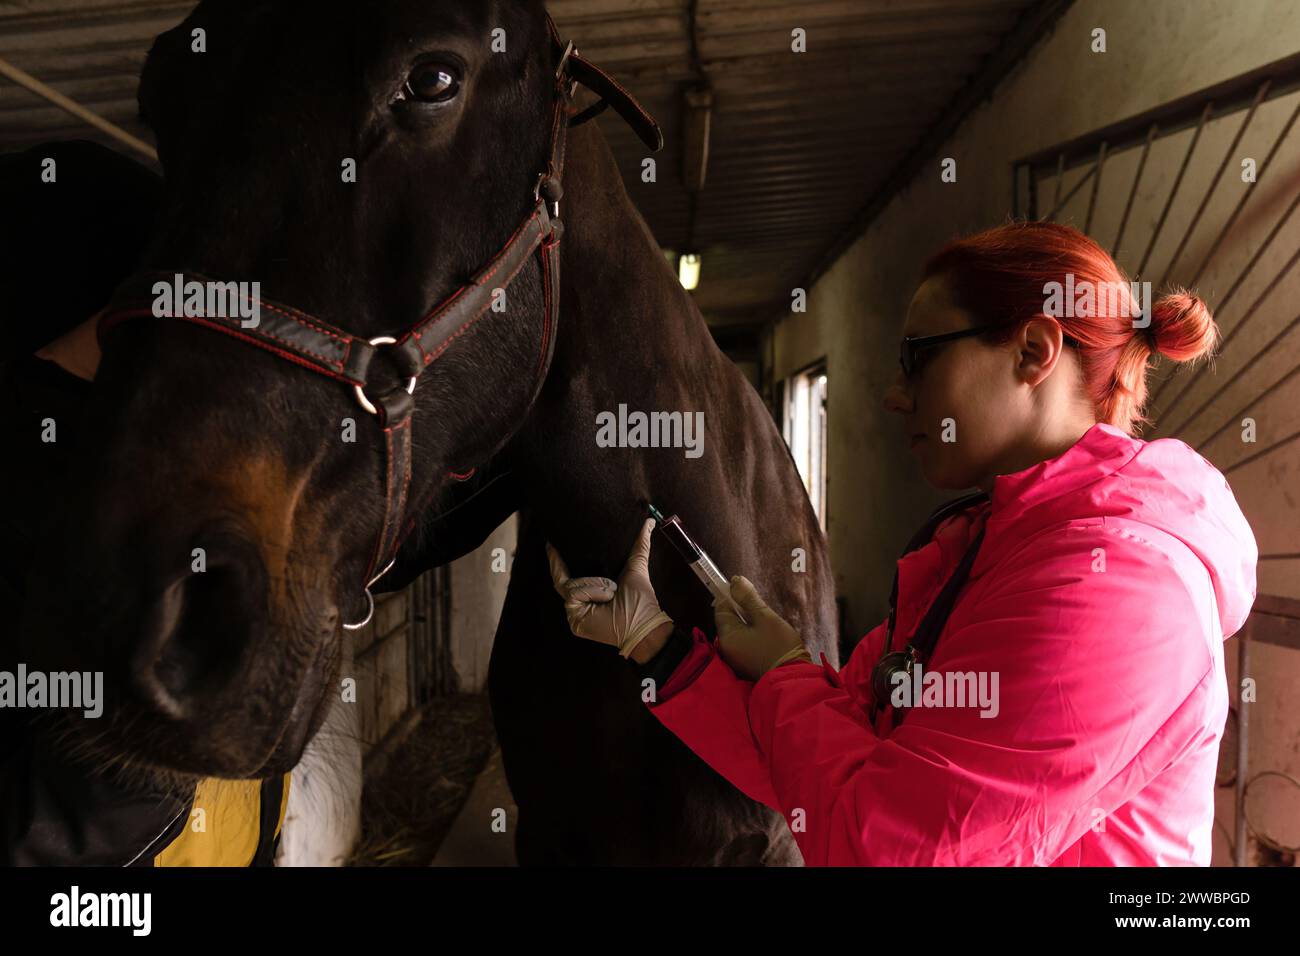 Vétérinaire administrant l'injection à cheval. Prélèvement de sang veineux pour analyse Banque D'Images